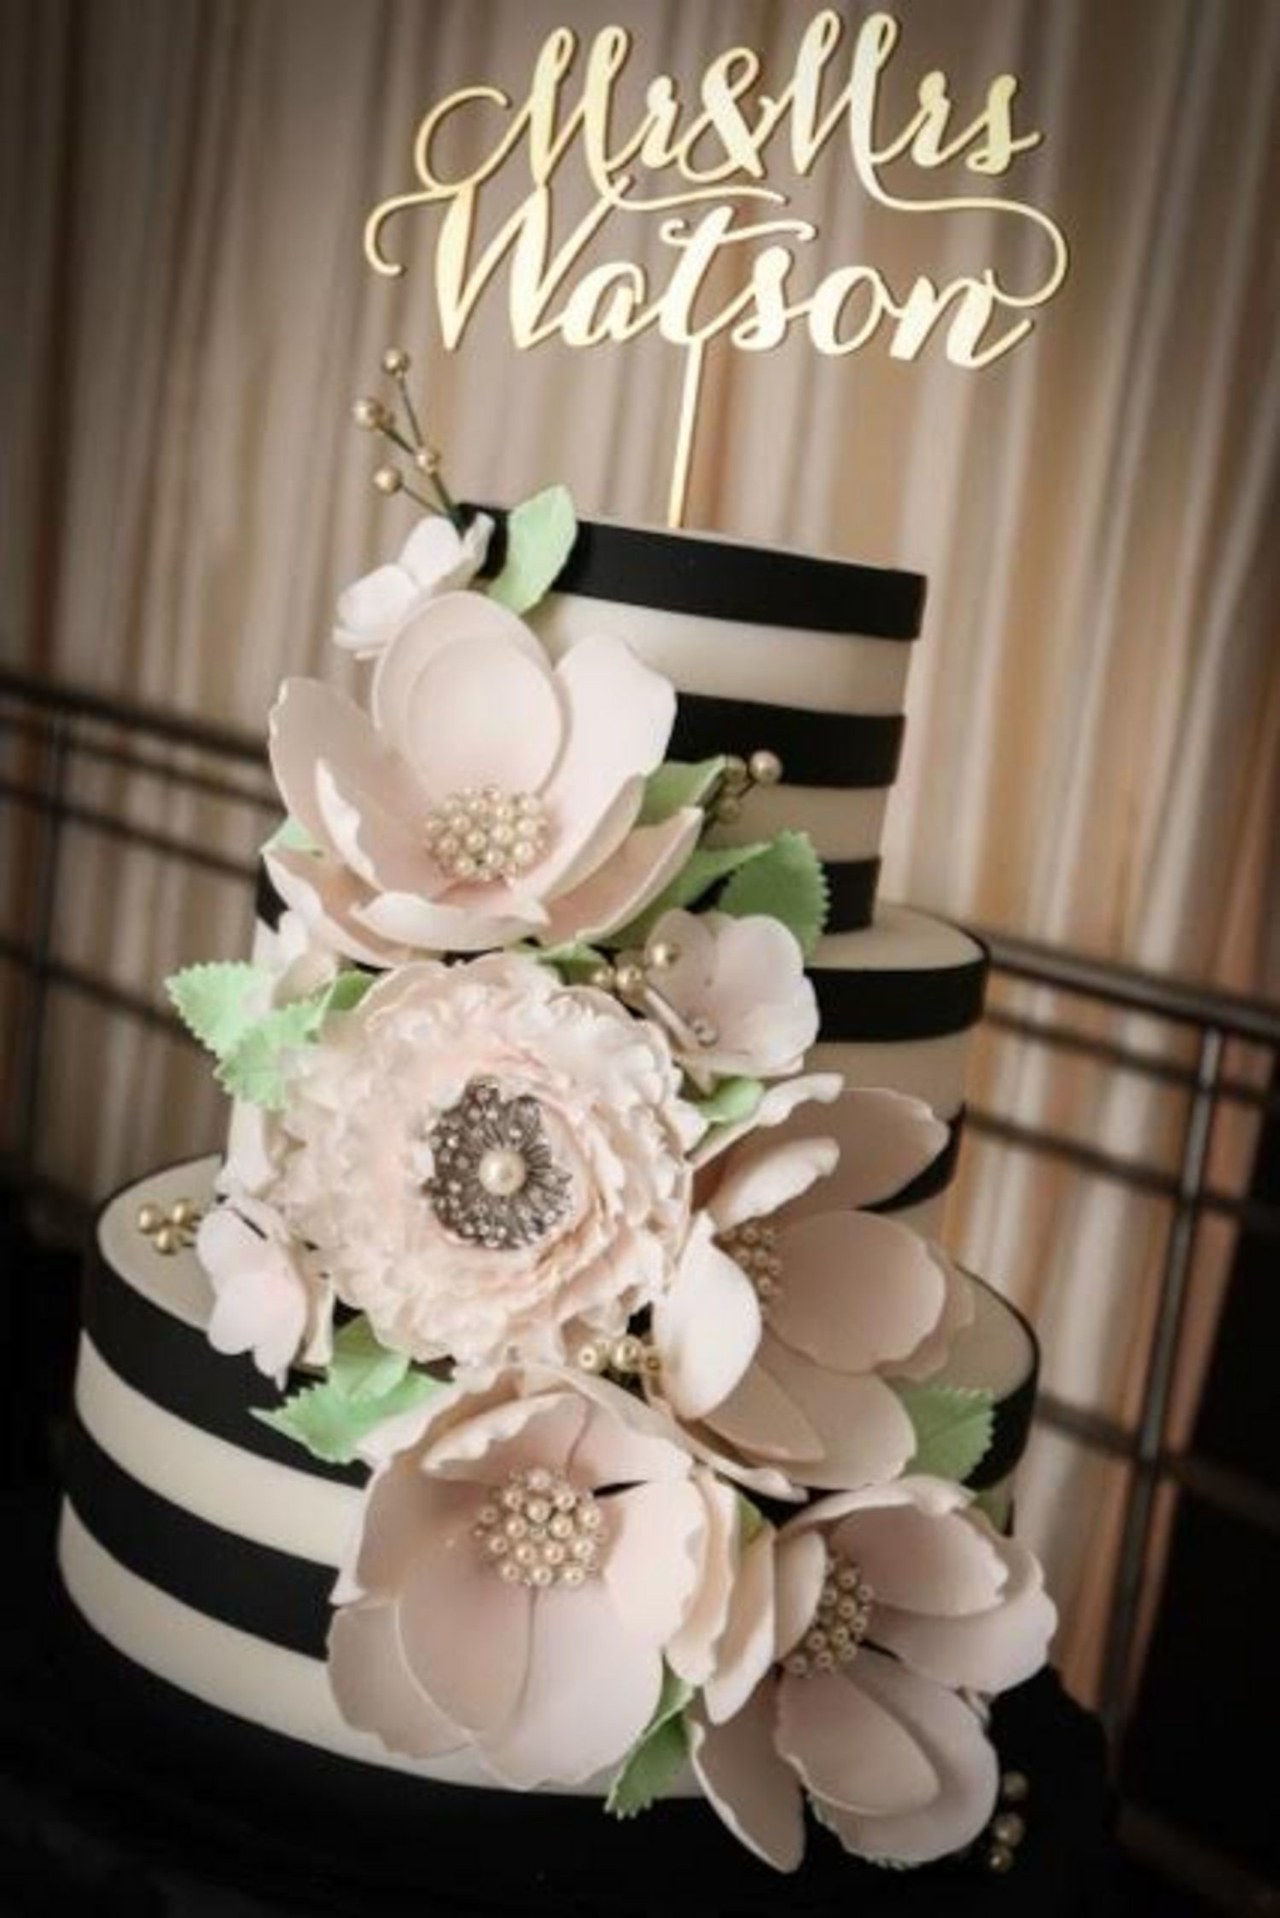 04 2016 wedding cake trends black details amy beck cake design